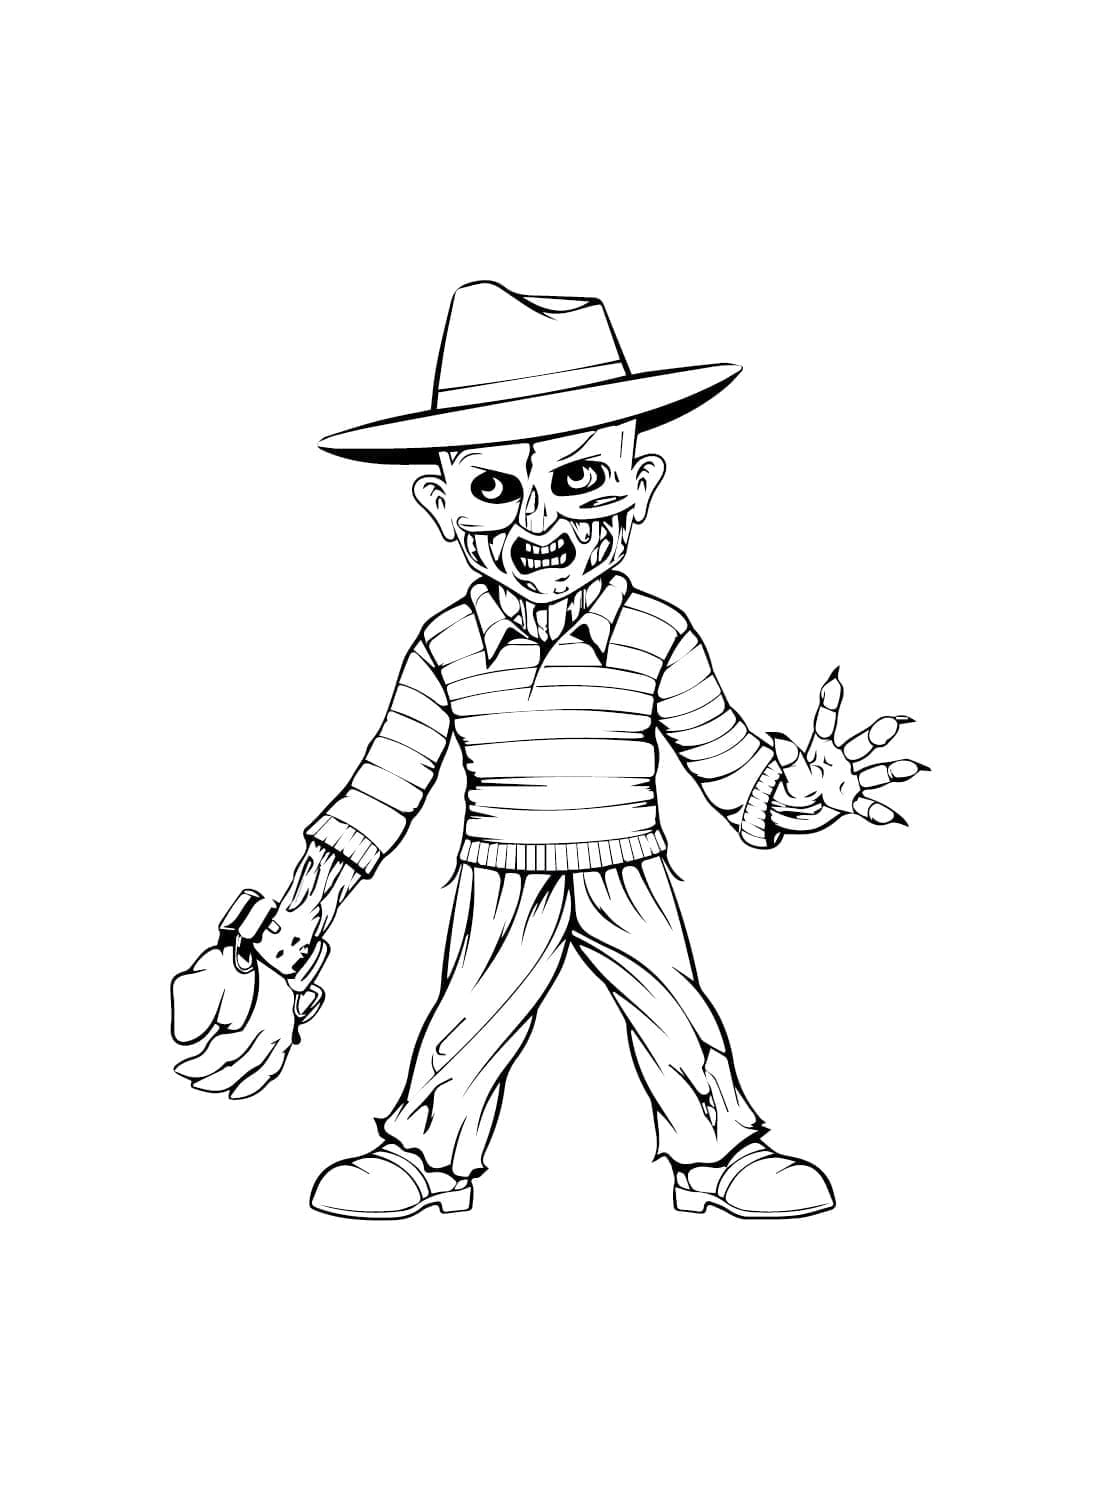 Freddy Krueger Pour Enfants coloring page